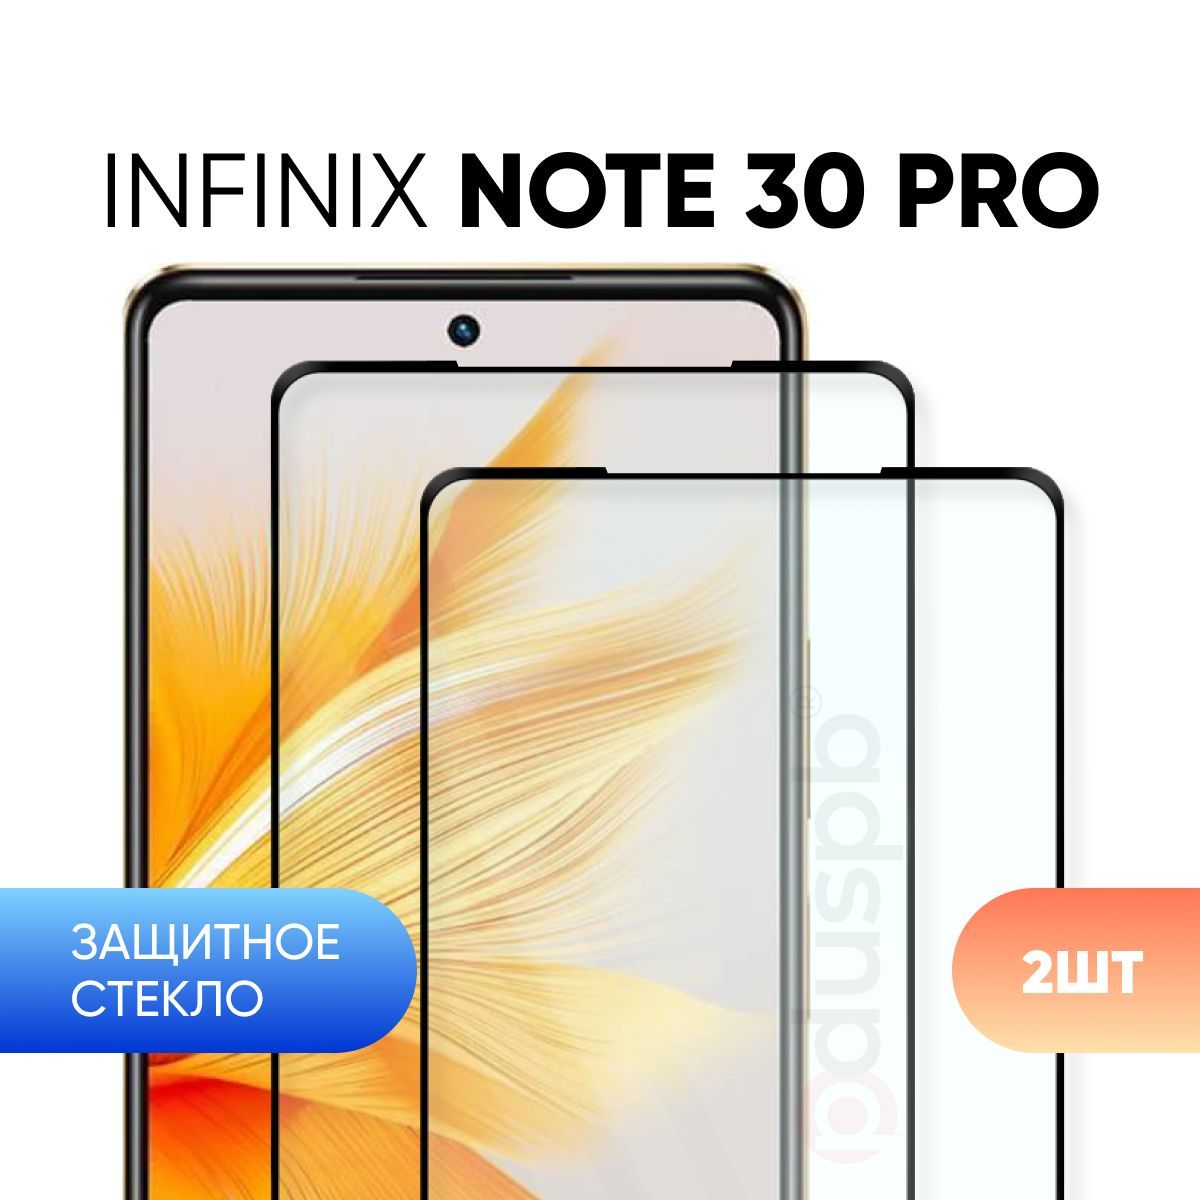 Infinix note 30 pro ростест. Инфиникс ноут 30. Infinix Note 30 защитное стекло. Стекло Infinix Note 30 Pro. Infinix Note 30 защитное стекло совместимость.